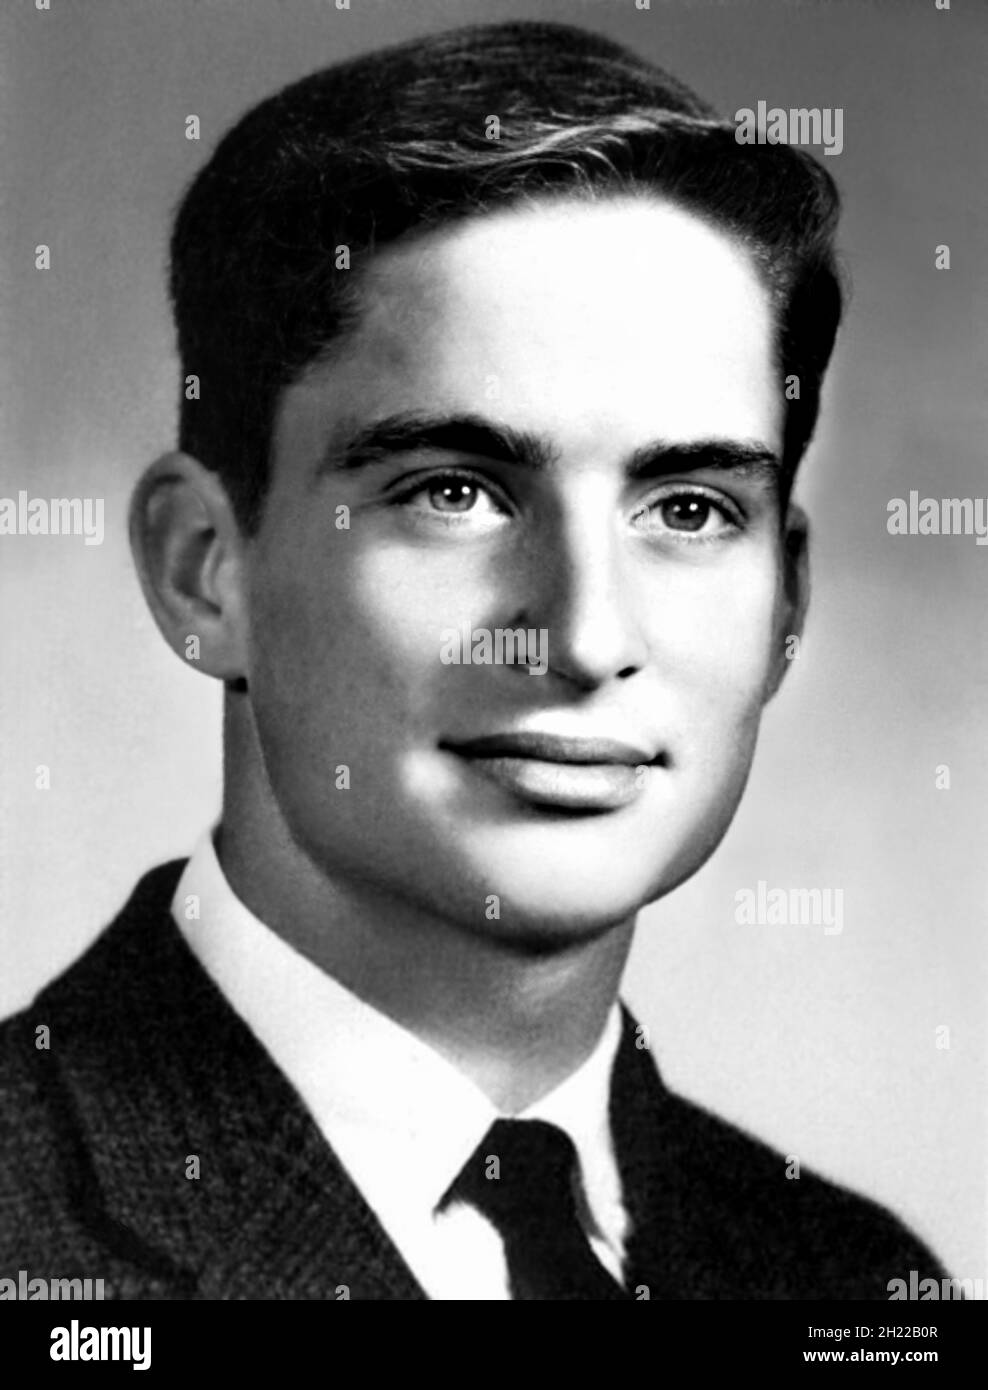 1961 , USA : l'attore americano MICHAEL DOUGLAS ( nato il 25 settembre 1944 ), di 17 anni, foto dell'Annuario delle scuole superiori . Fotografo sconosciuto .- STORIA - FOTO STORICHE - ATTORE - FILM - CINEMA - personalità da giovane giovani - personalità quando era giovane - RITRATTO - ritratto - ADOLESCENTE - ADOLESCENZA - ADOESCENTE - BAMBINI - INFANZIA - sorriso - sorriso --- ARCHIVIO GBB Foto Stock